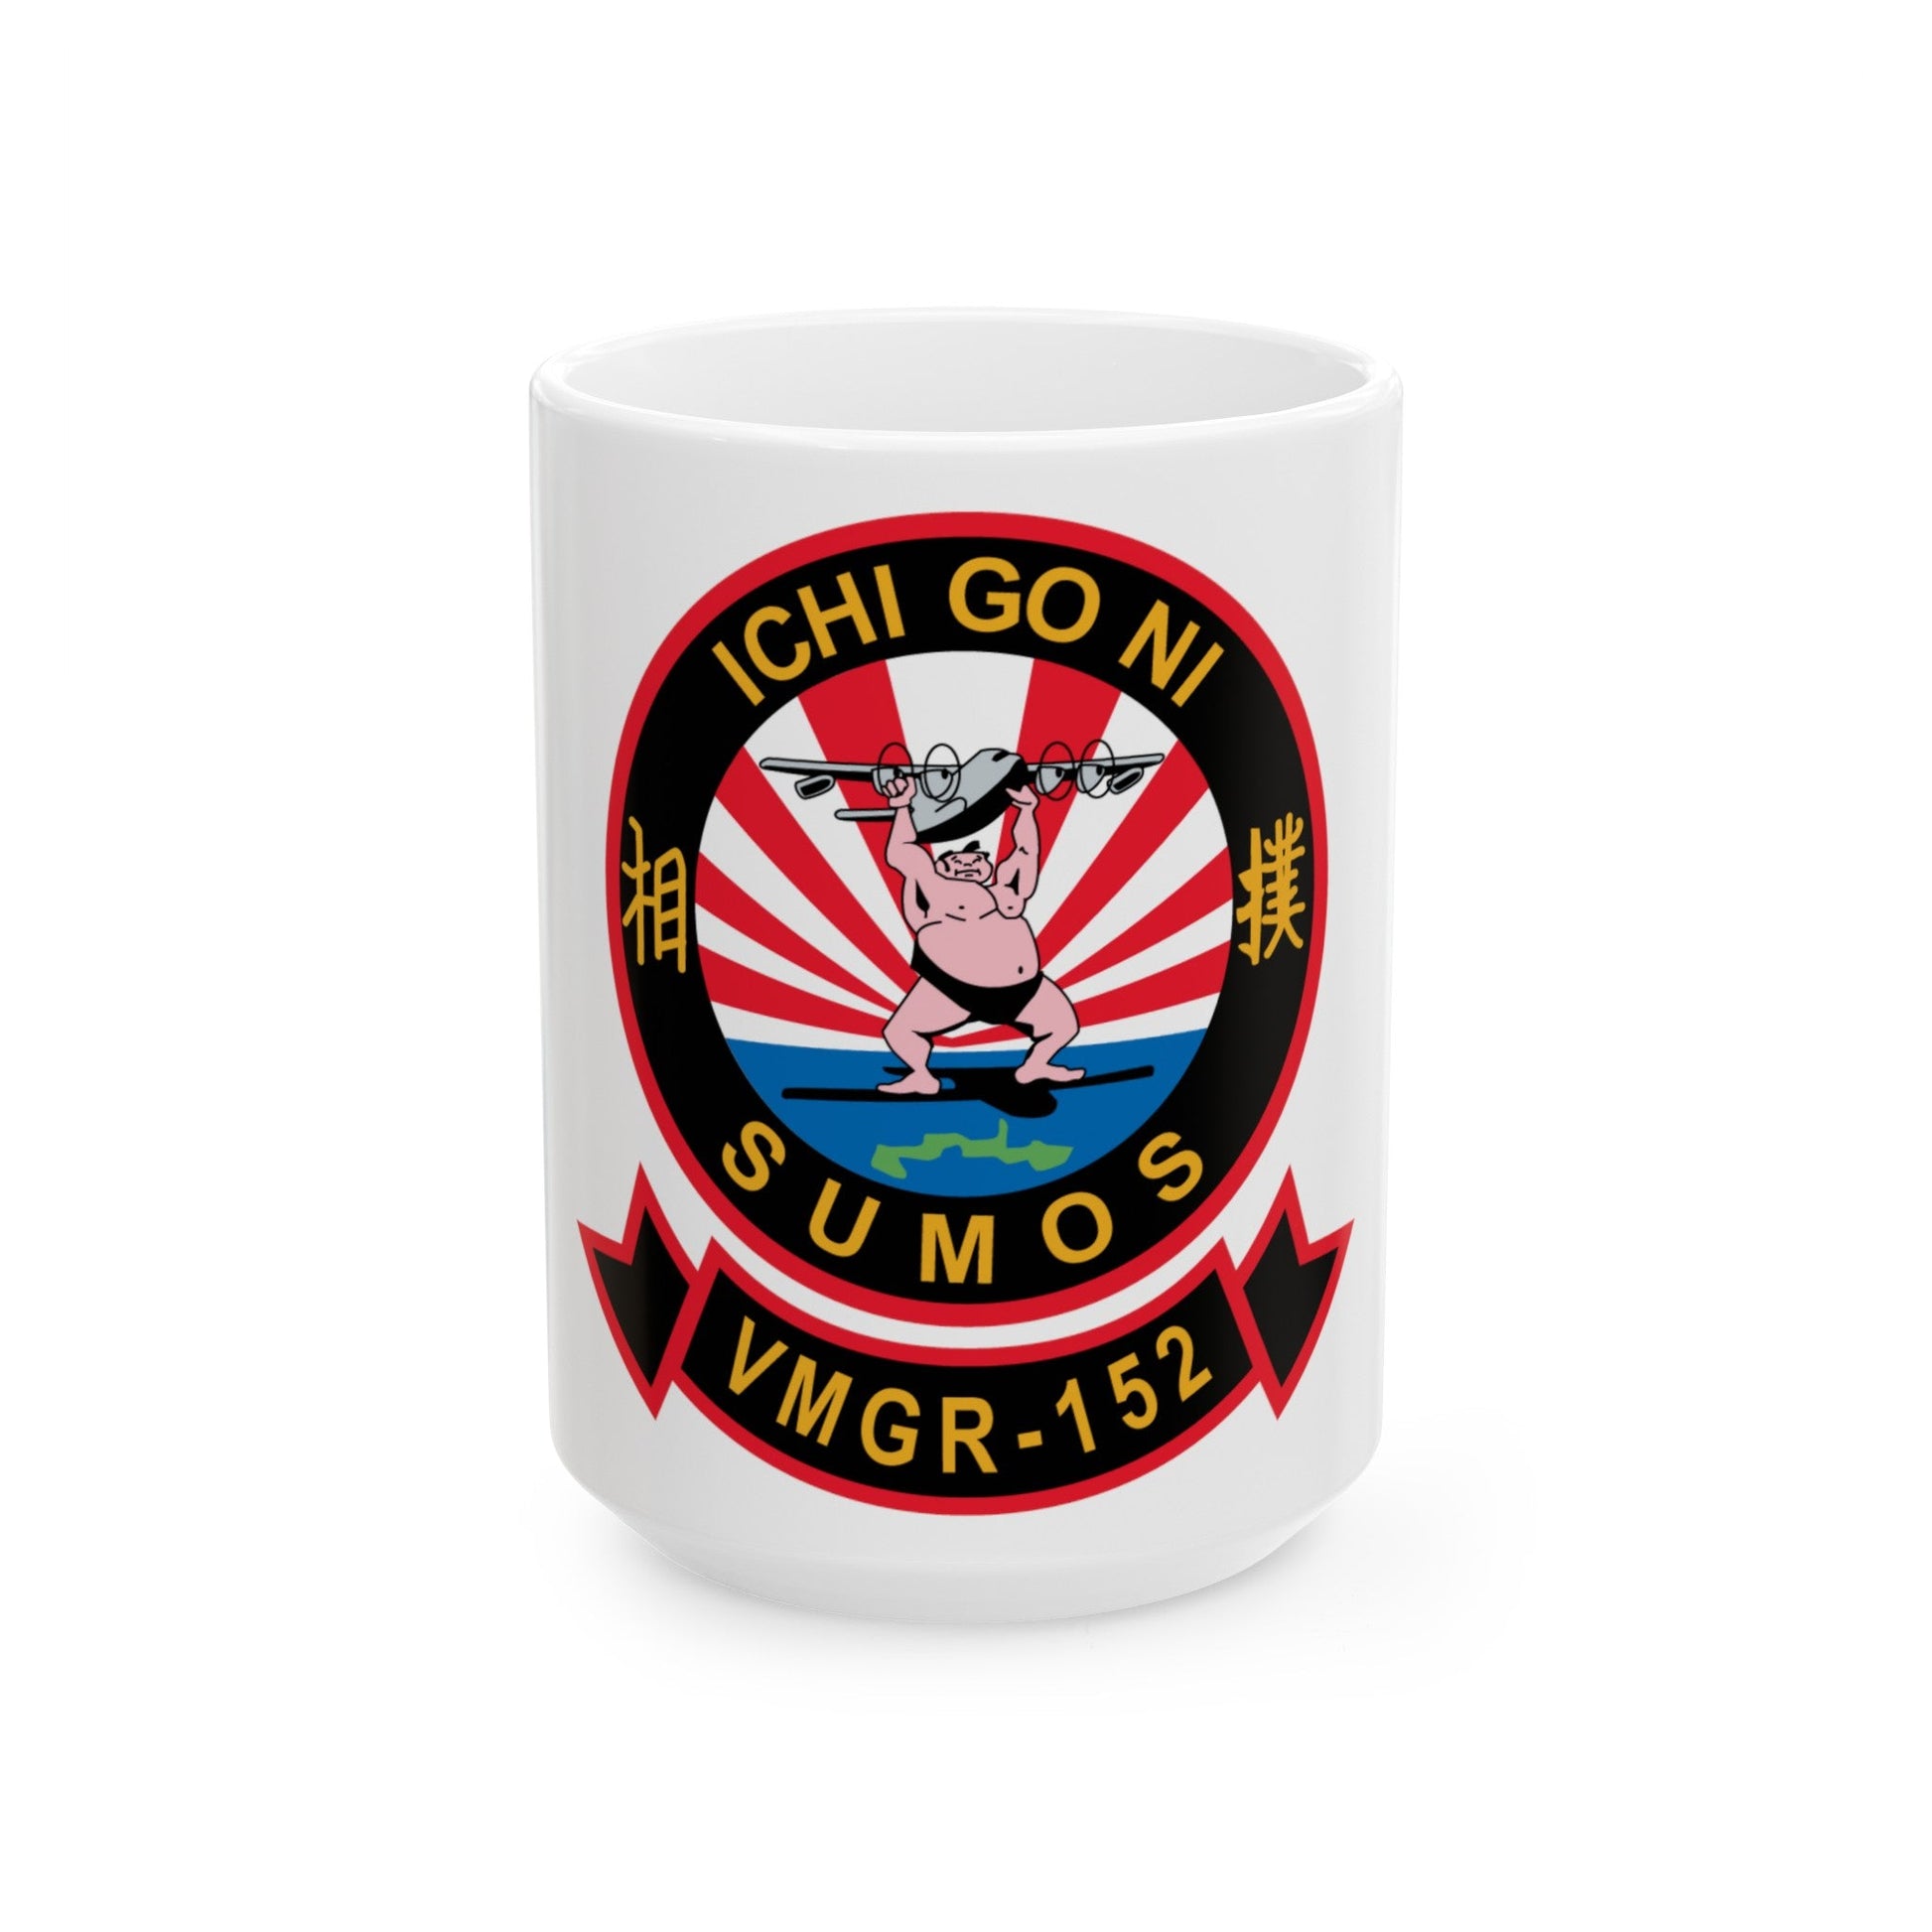 VMGR 152 Sumos ICHI GO NI (U.S. Navy) White Coffee Mug-15oz-The Sticker Space